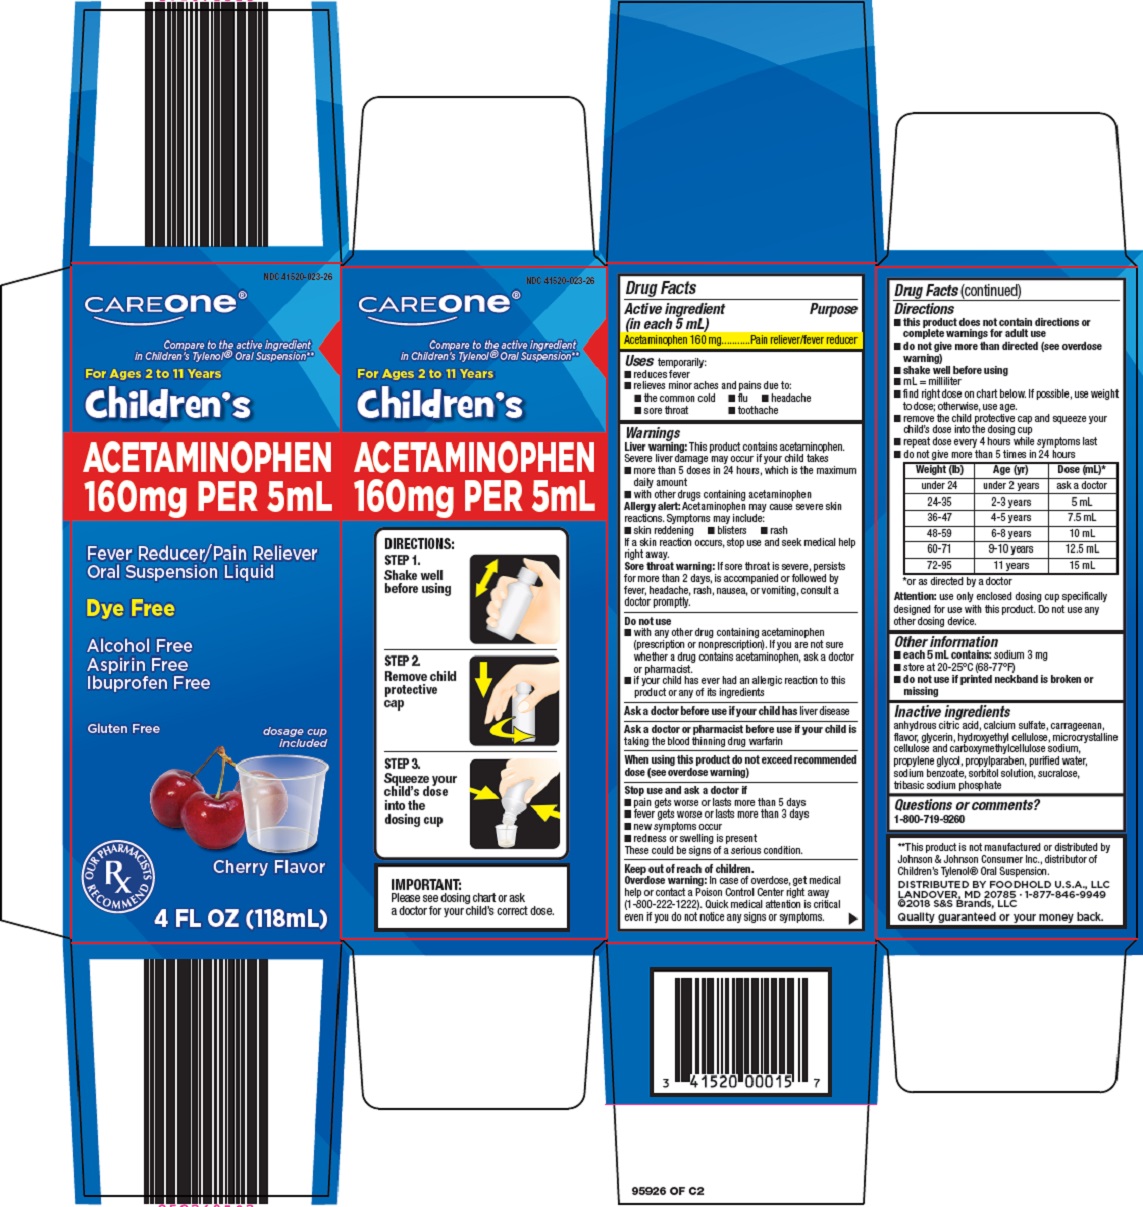 childrens-acetaminophen-image